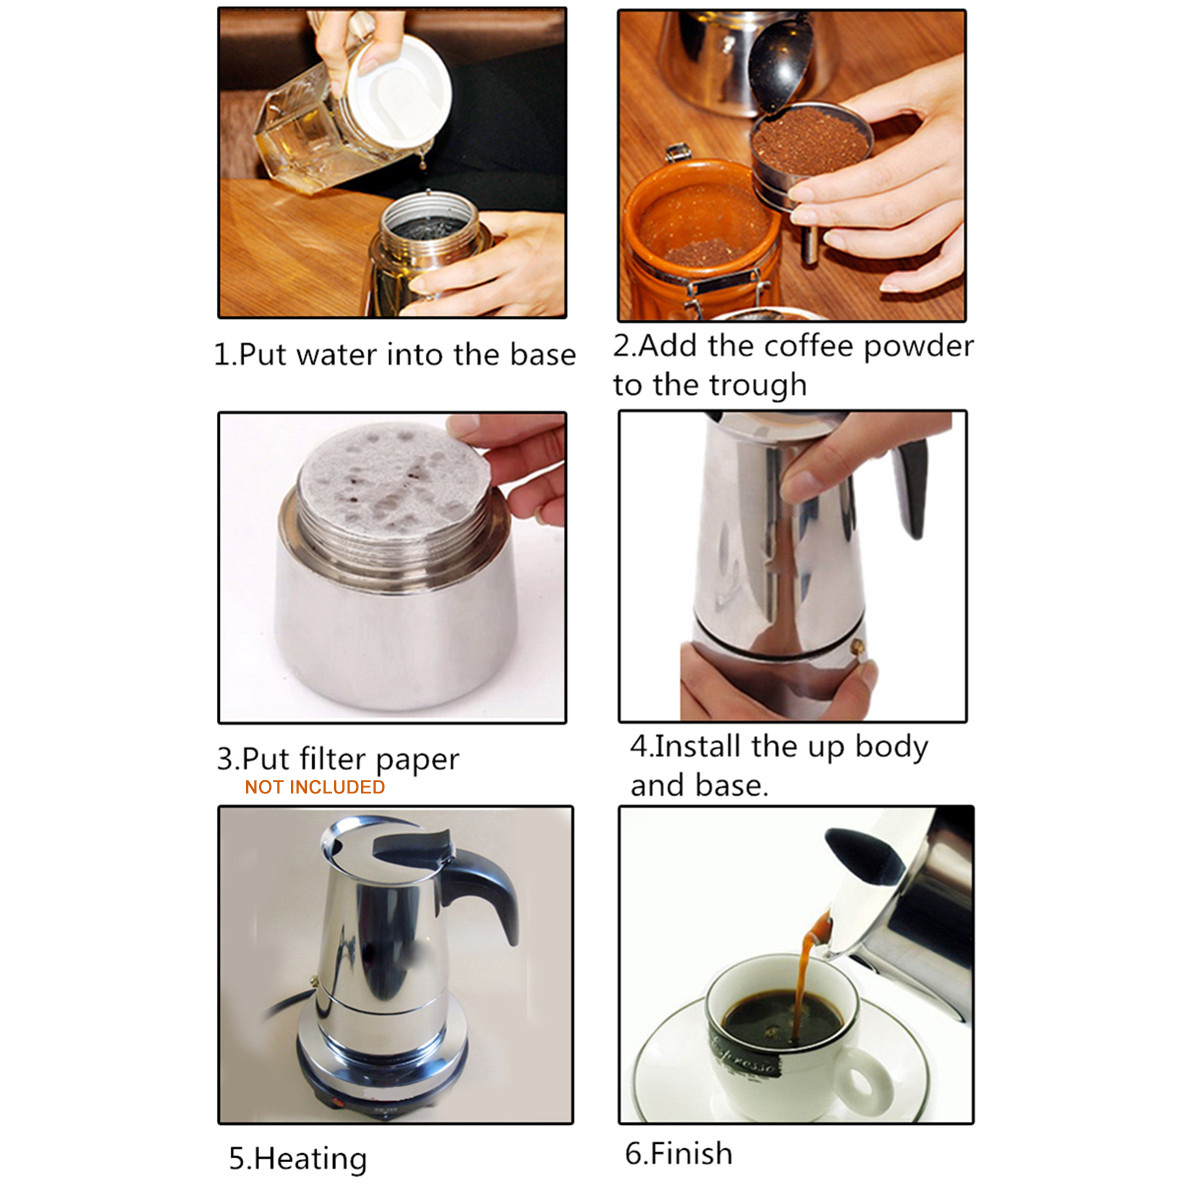 220V 500W 450ml Portable Coffee Espresso Pot Maker & Electric Stove Home Kitchen Tools 20